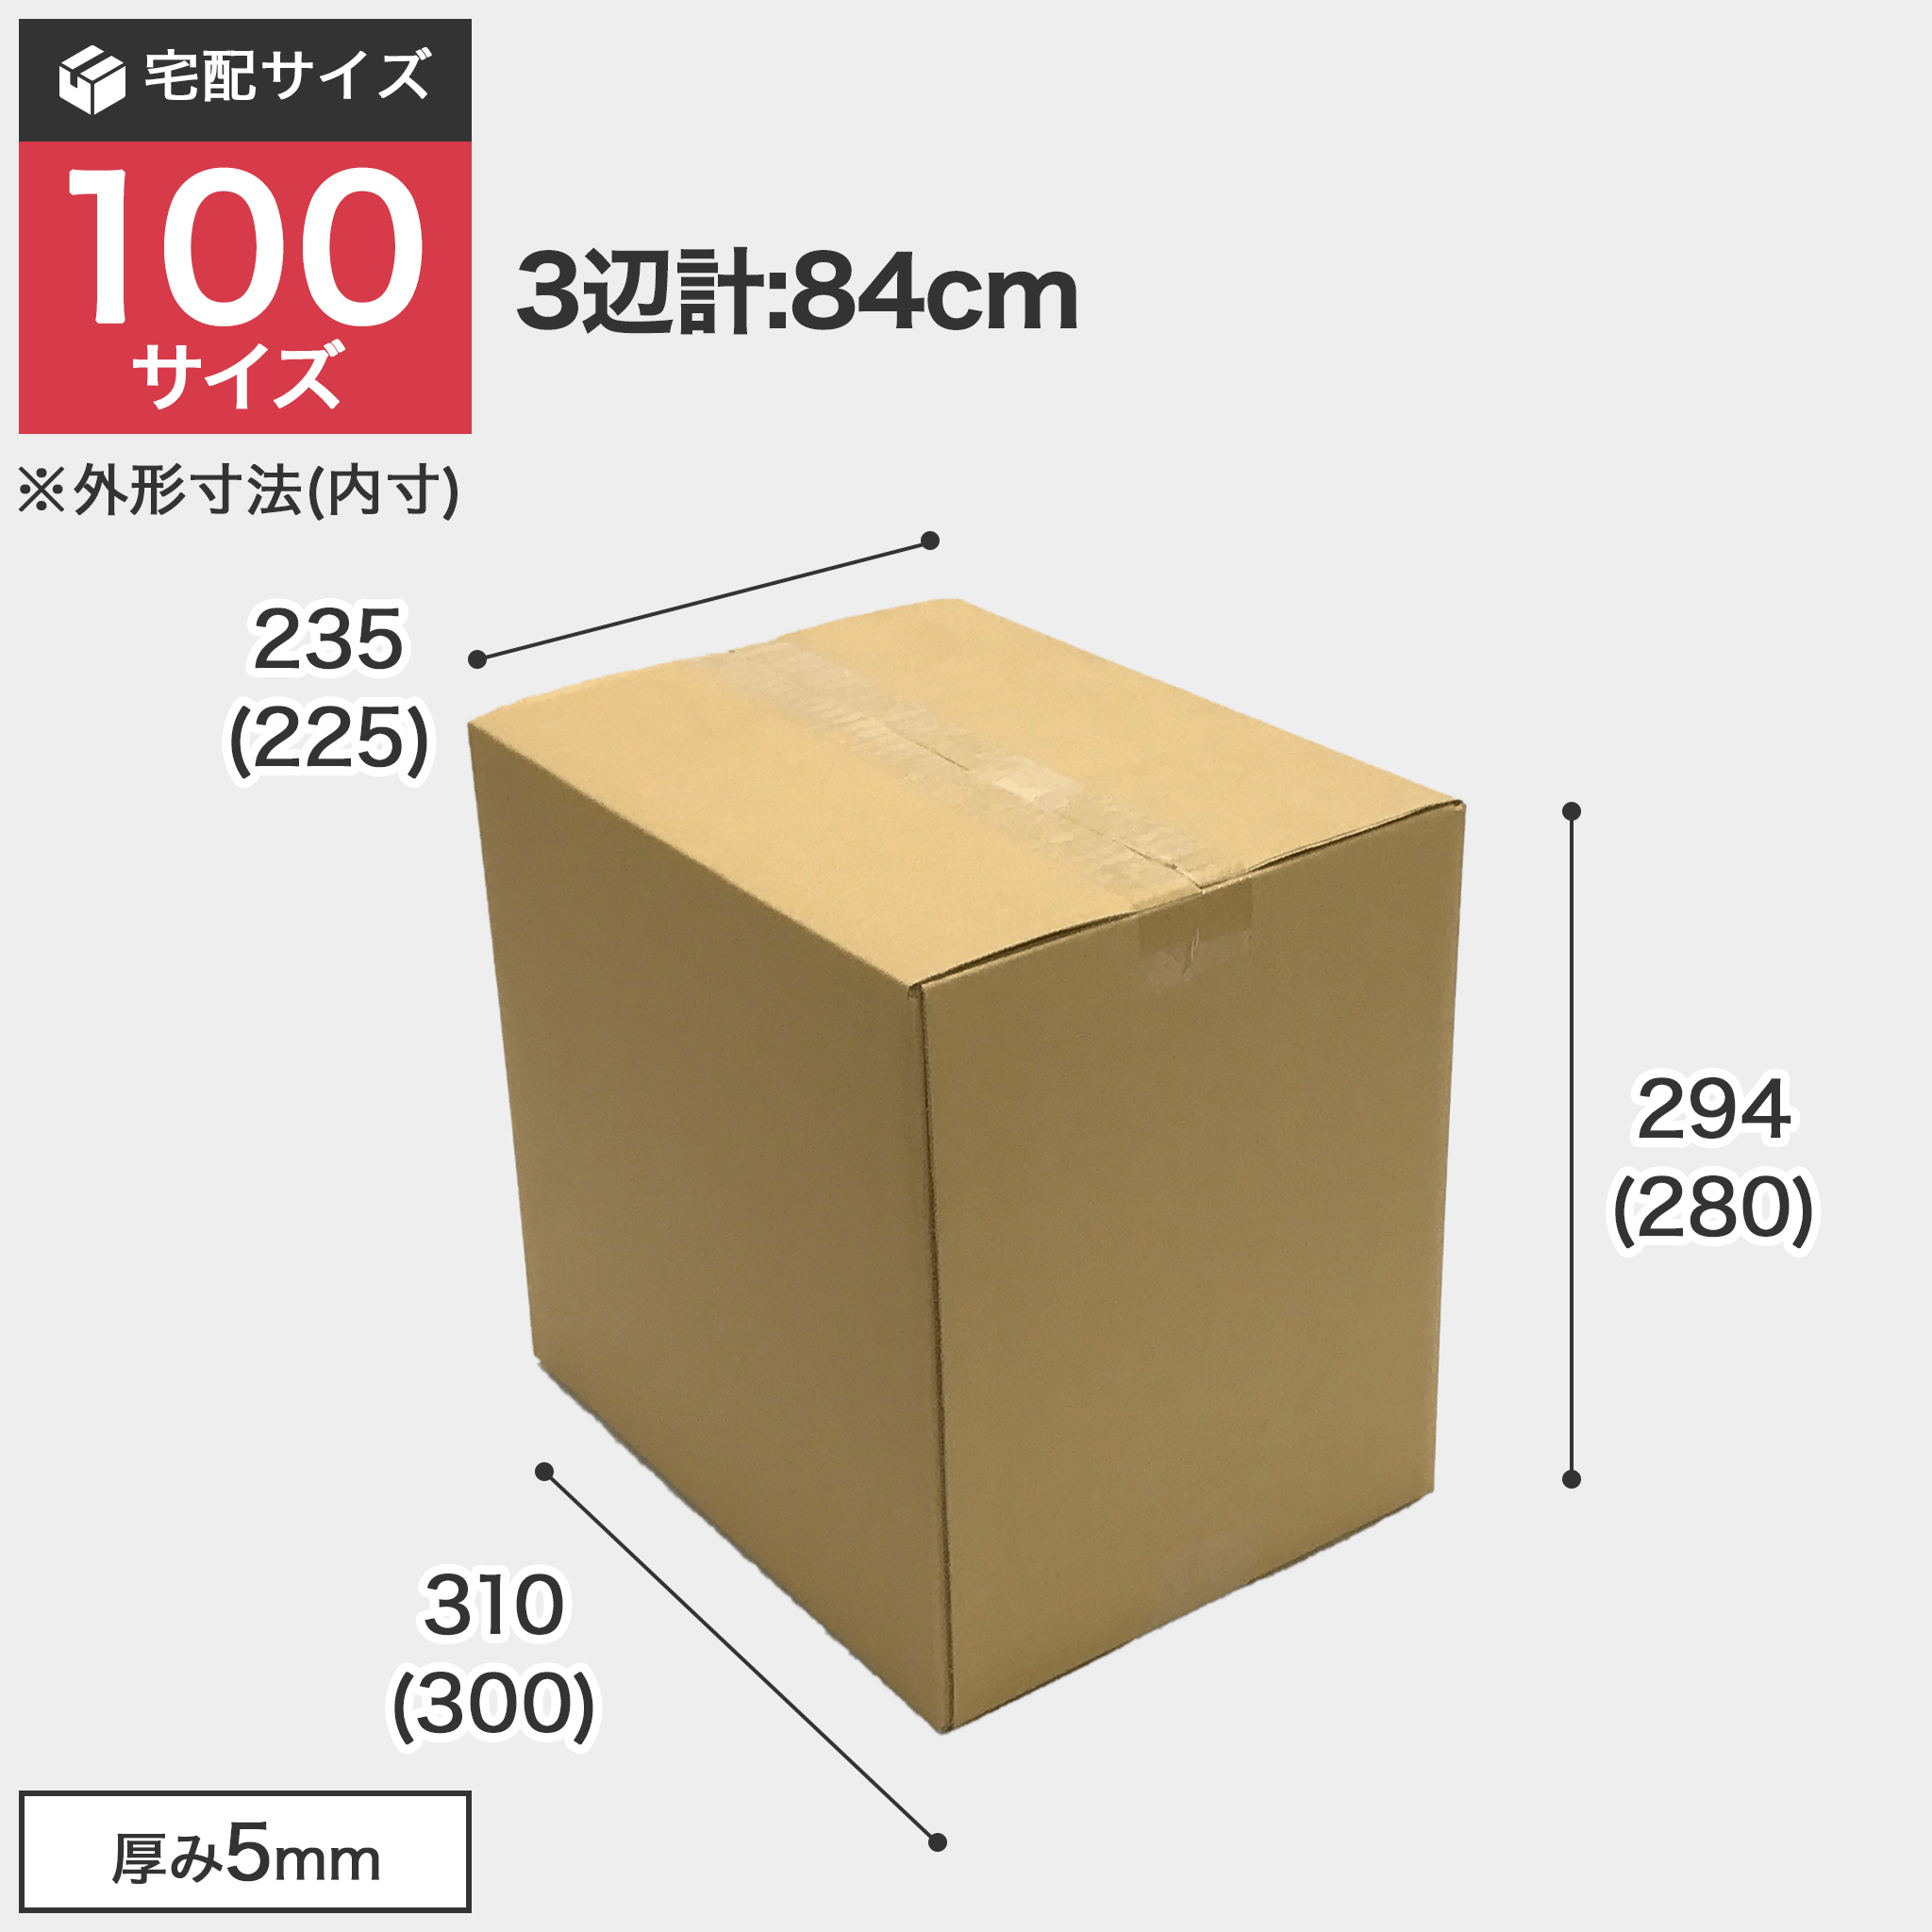 宅配100サイズのダンボール箱 3辺合計約84cm